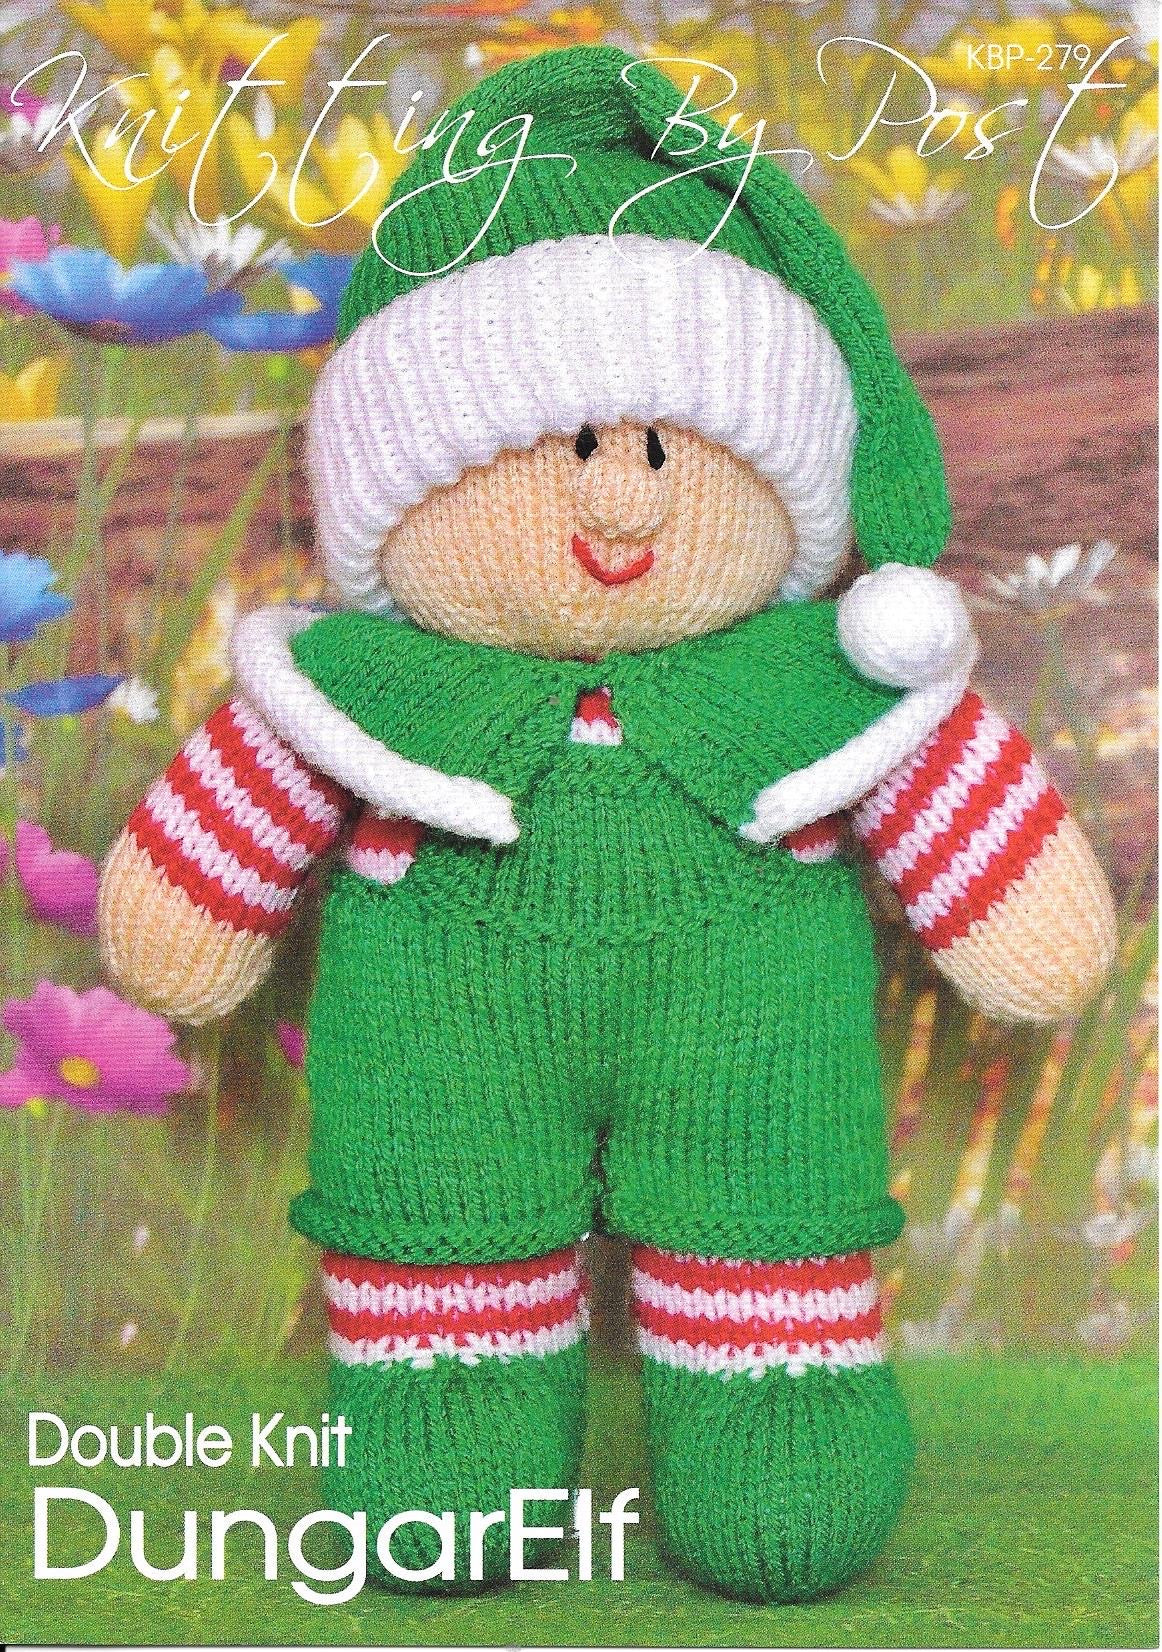 KBP279 Dungar Elf toy in DK knitting pattern